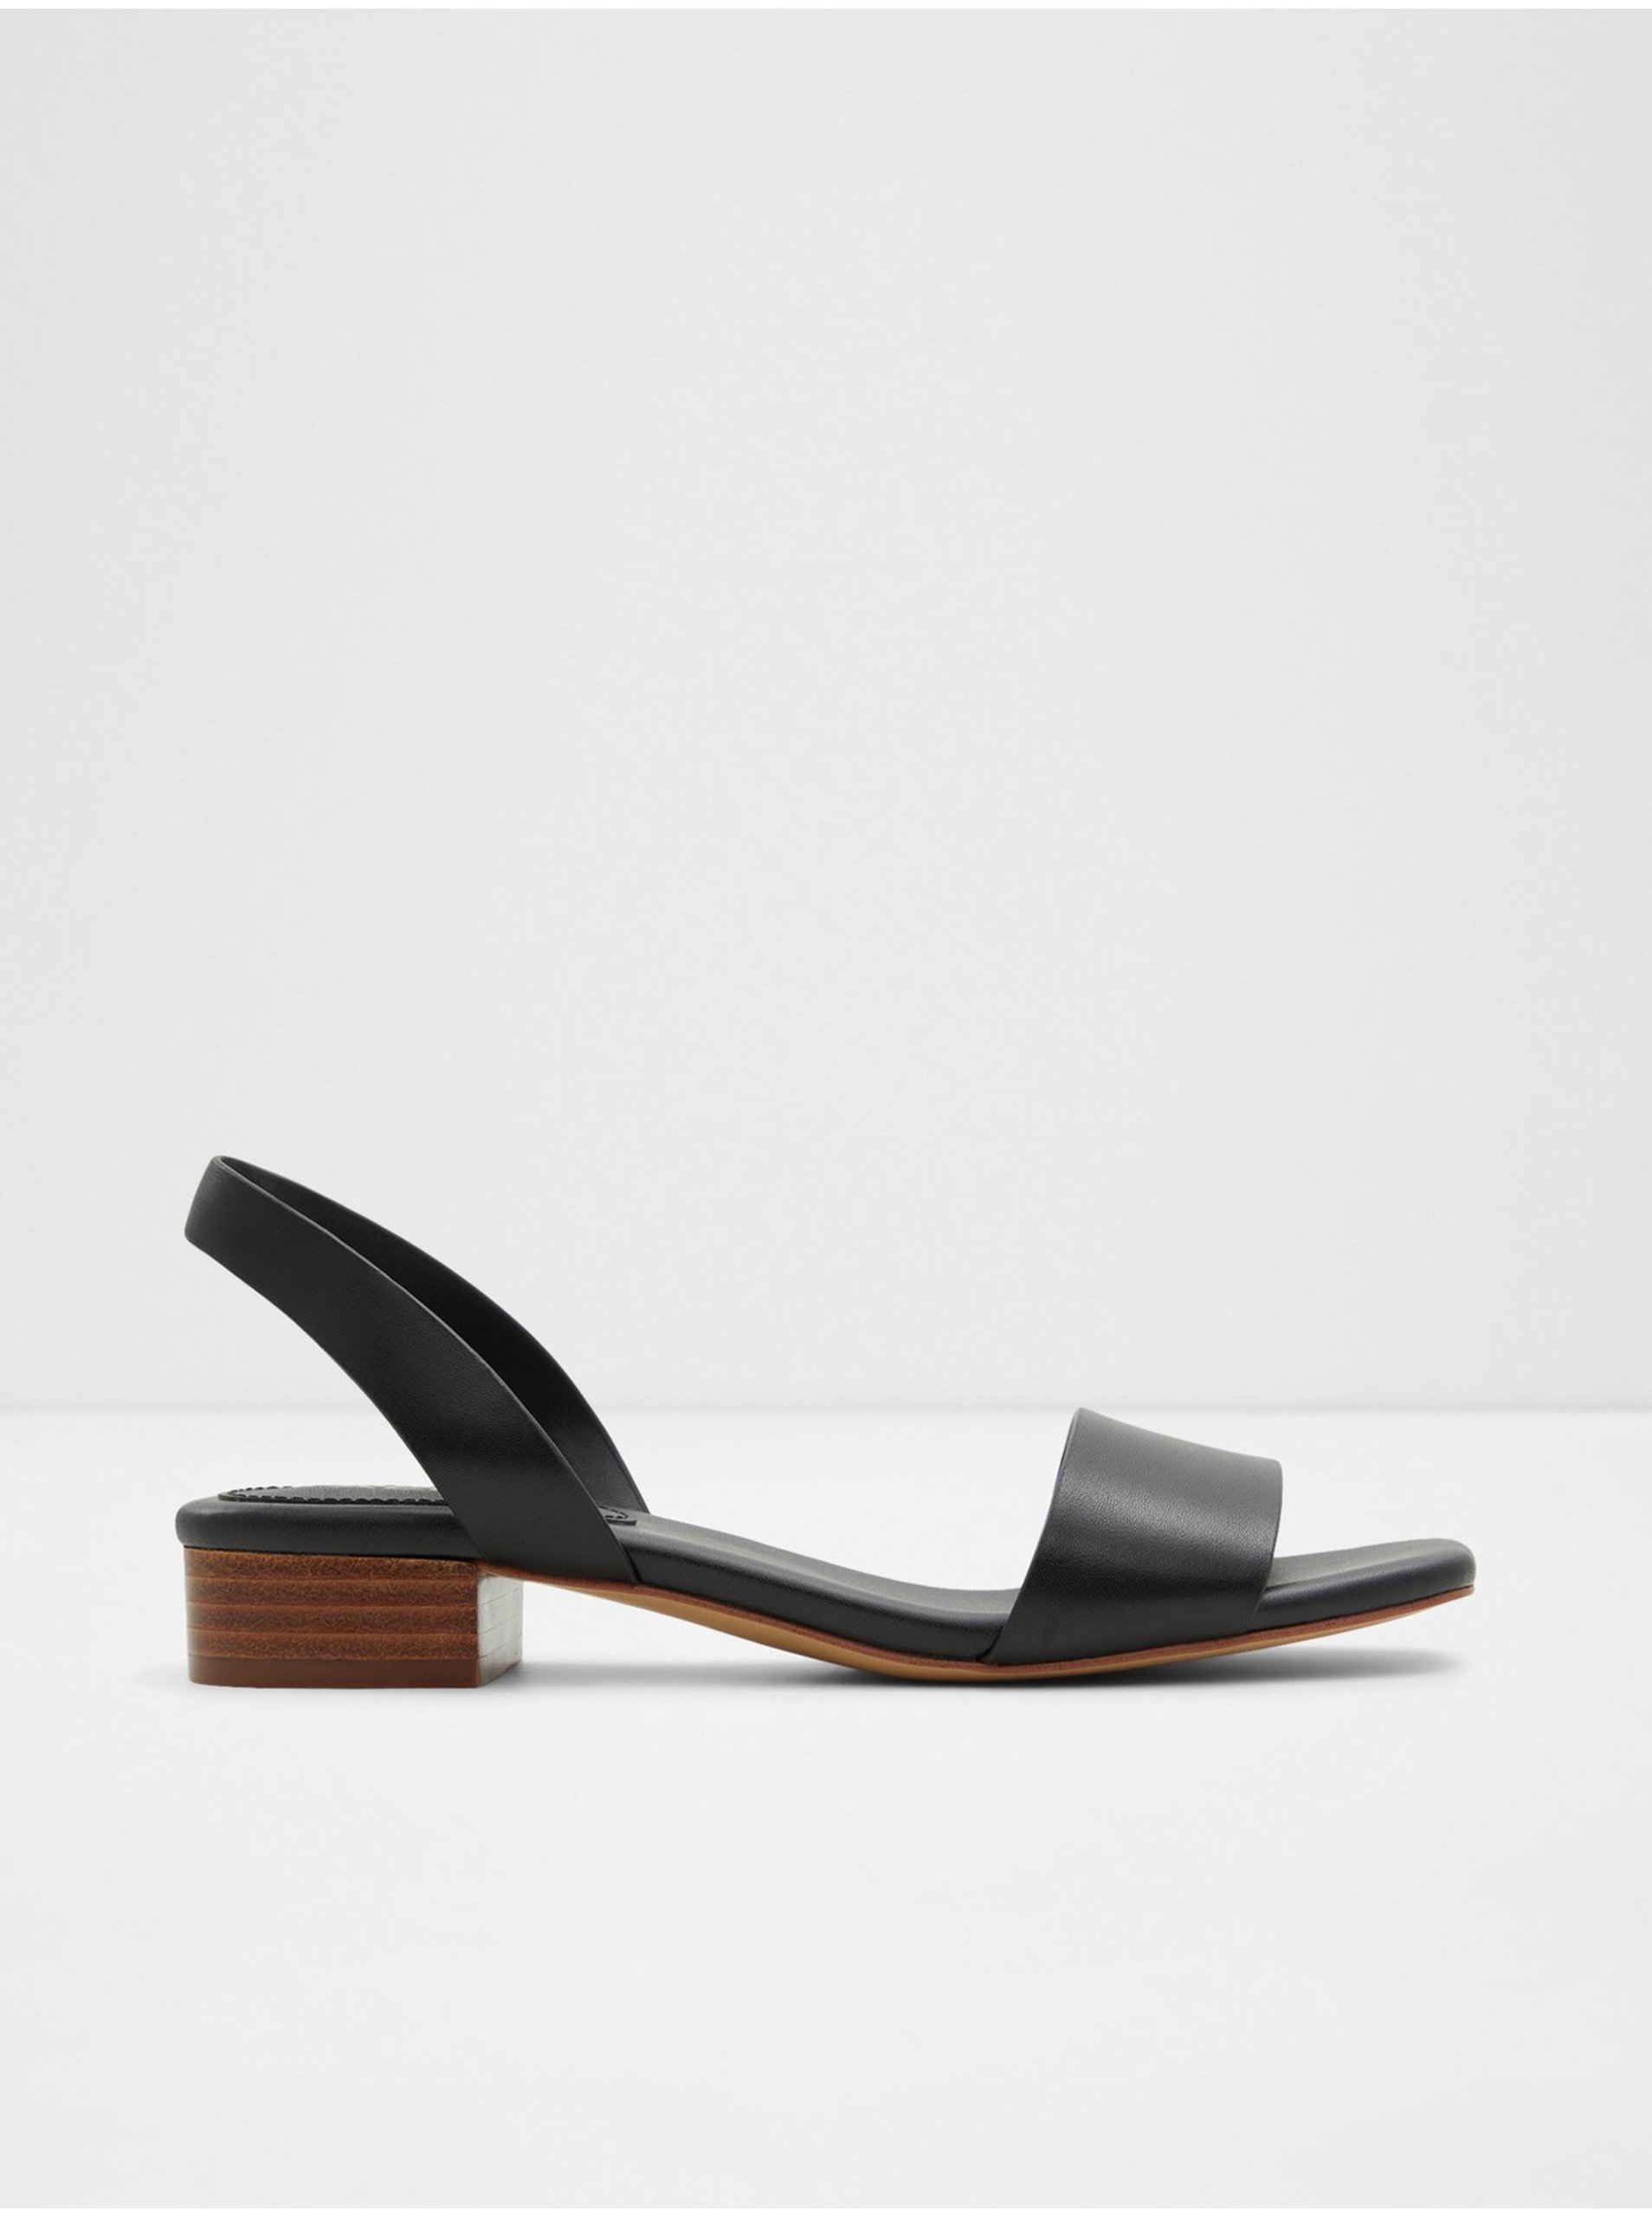 E-shop Černé dámské kožené sandály na nízkém podpatku ALDO Dorenna